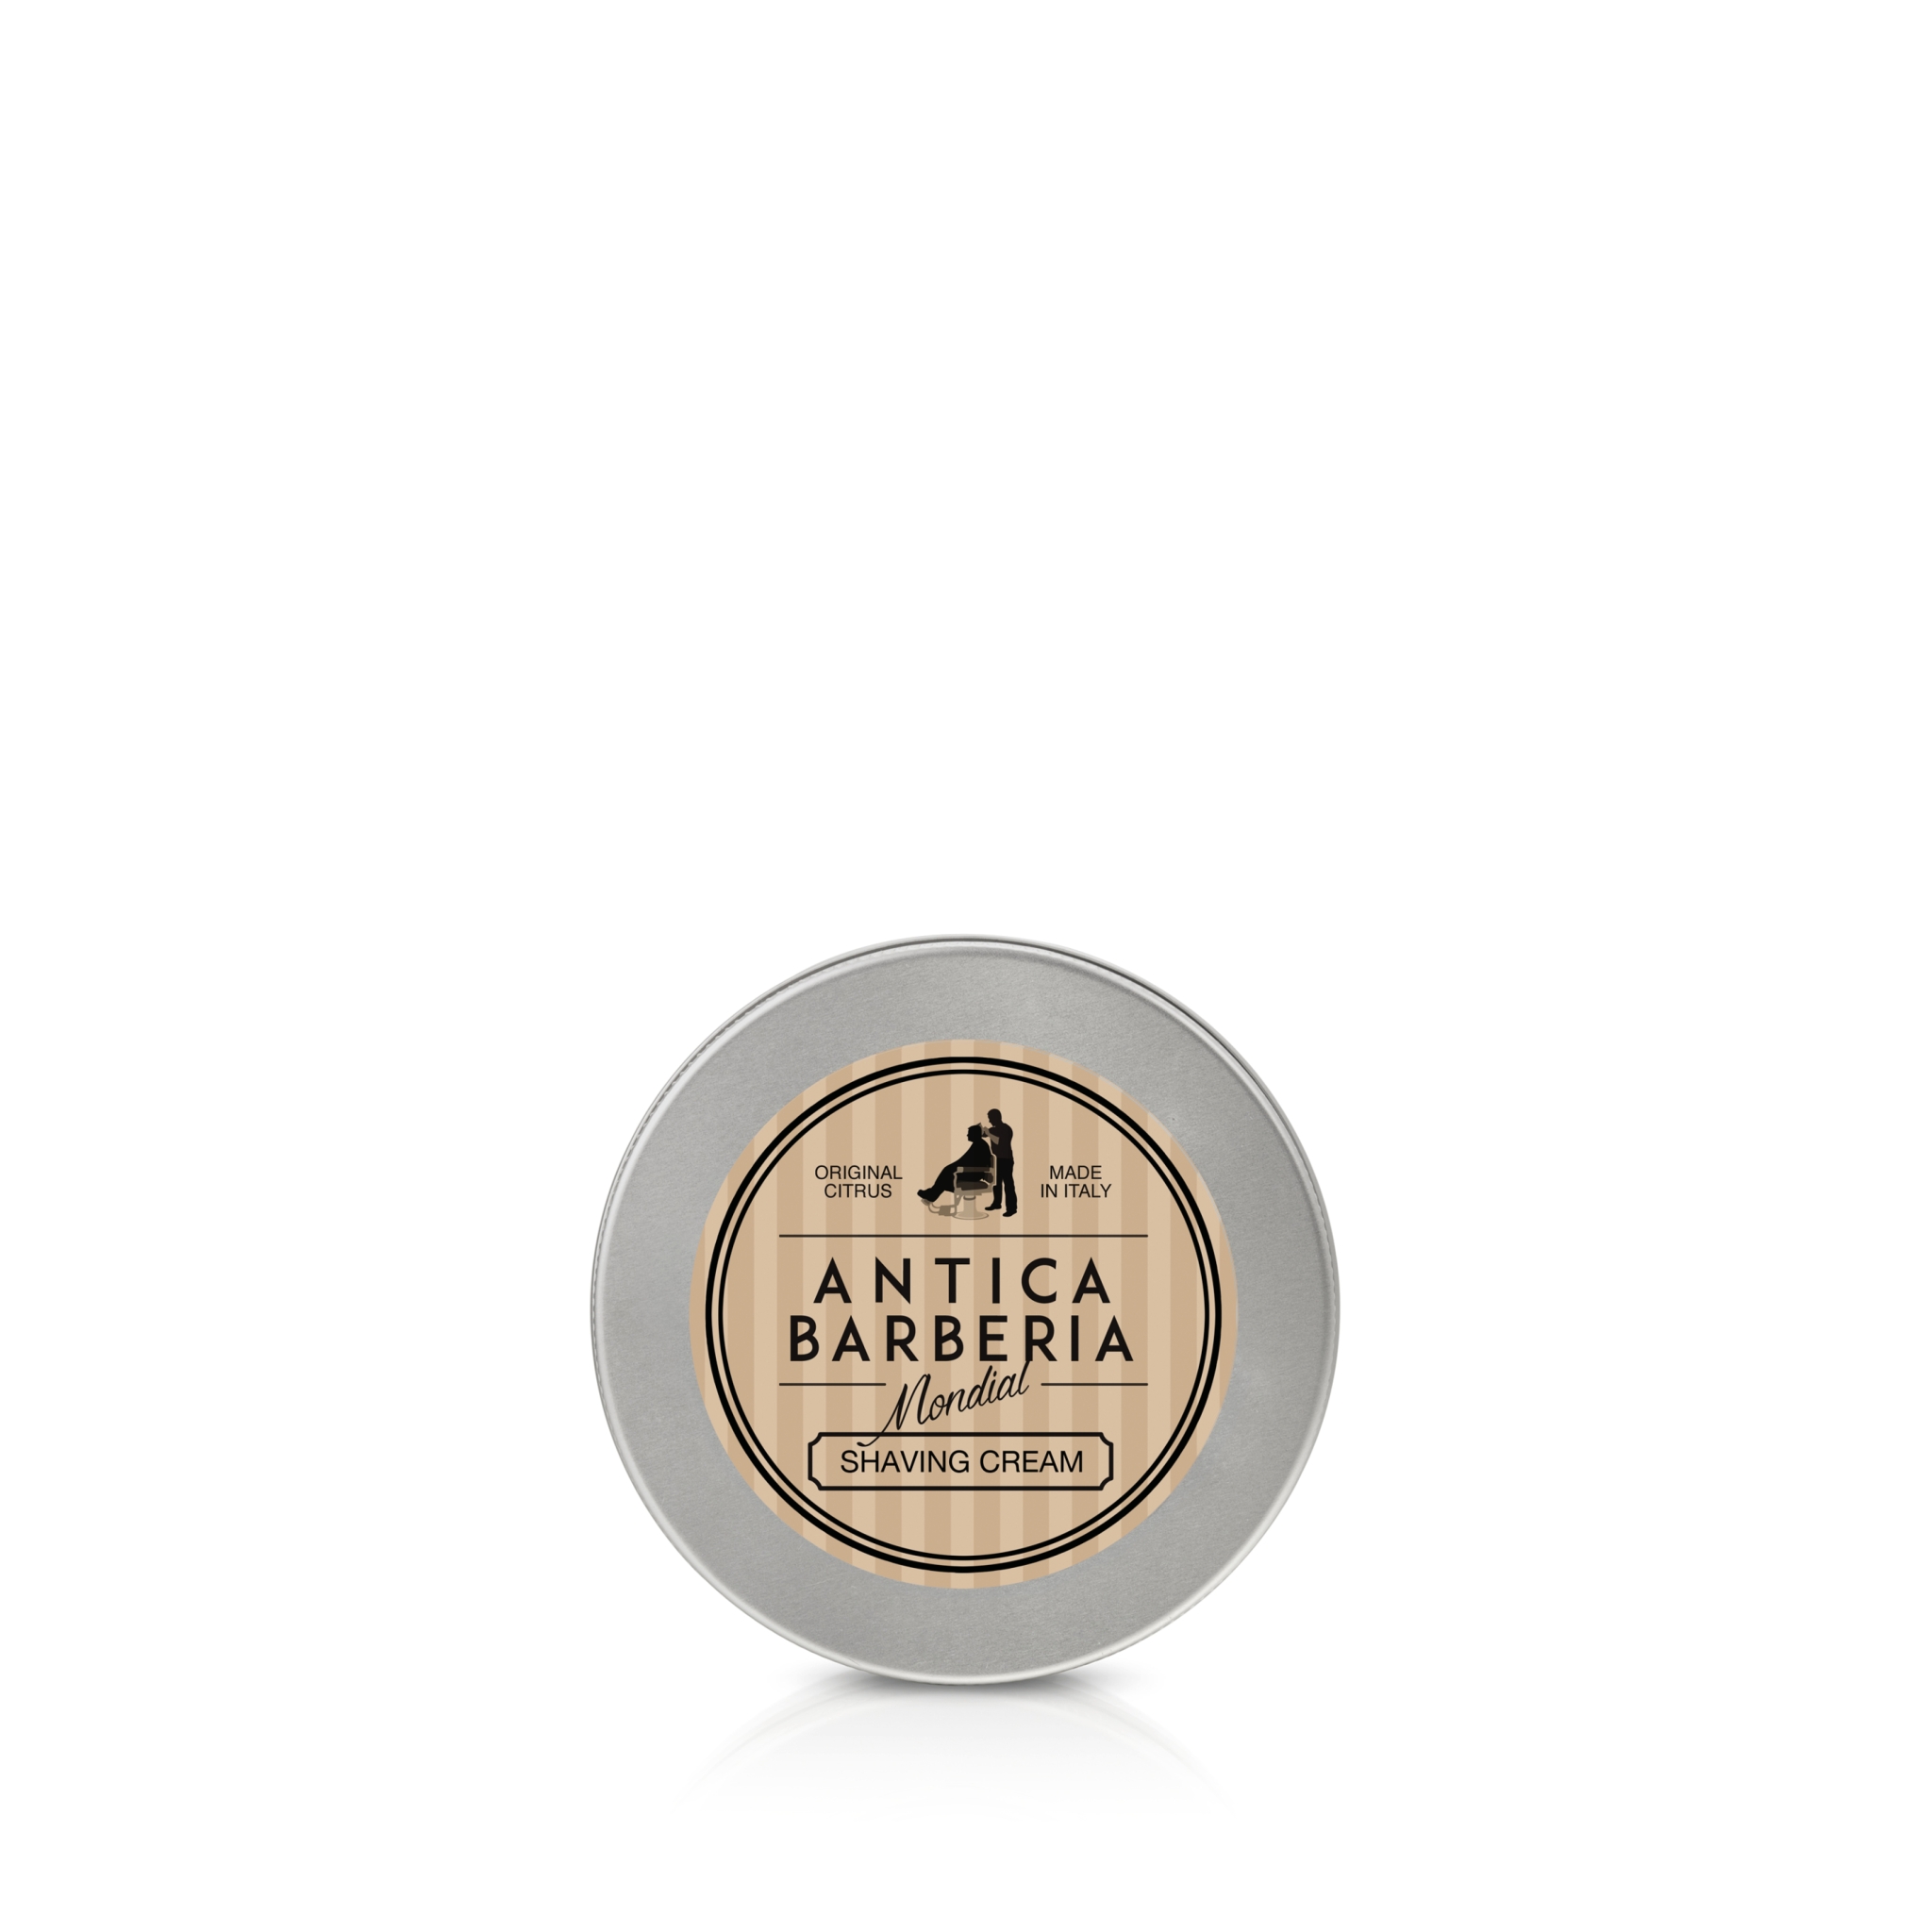 Крем для бритья Antica Barberia Mondial "ORIGINAL CITRUS", цитрусовый аромат, 150 мл, алюминий